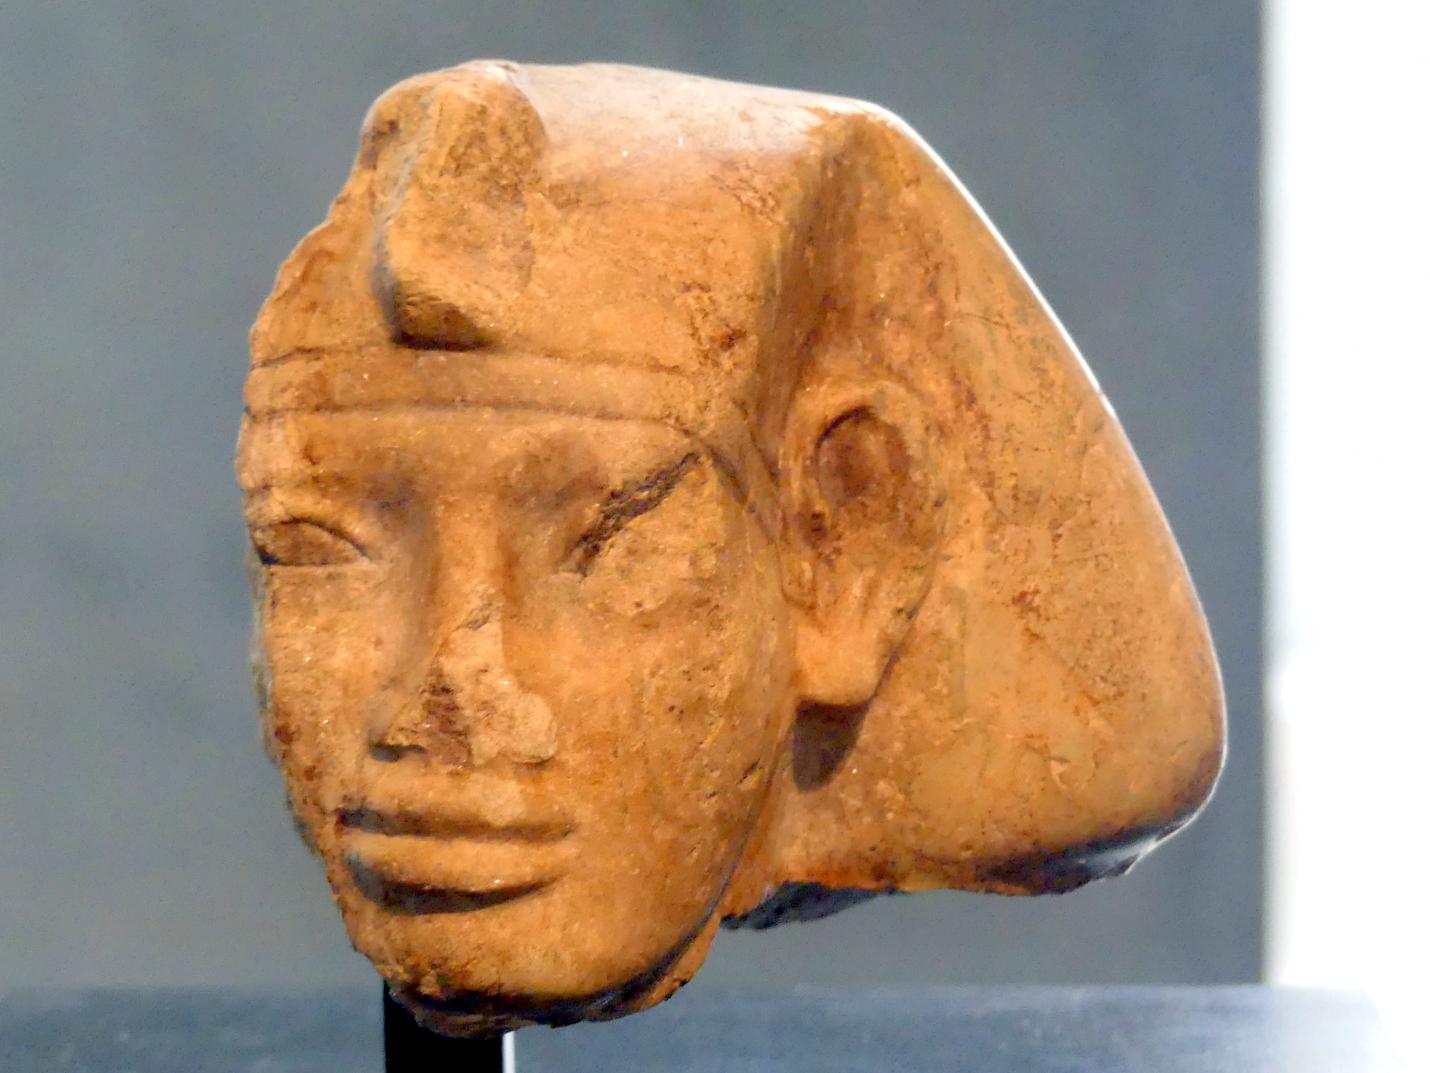 Statuenkopf des Pharao Amenemhet V. (?) mit Chatkopftuch, 13. Dynastie, 1639 - 1474 v. Chr., 1750 v. Chr.